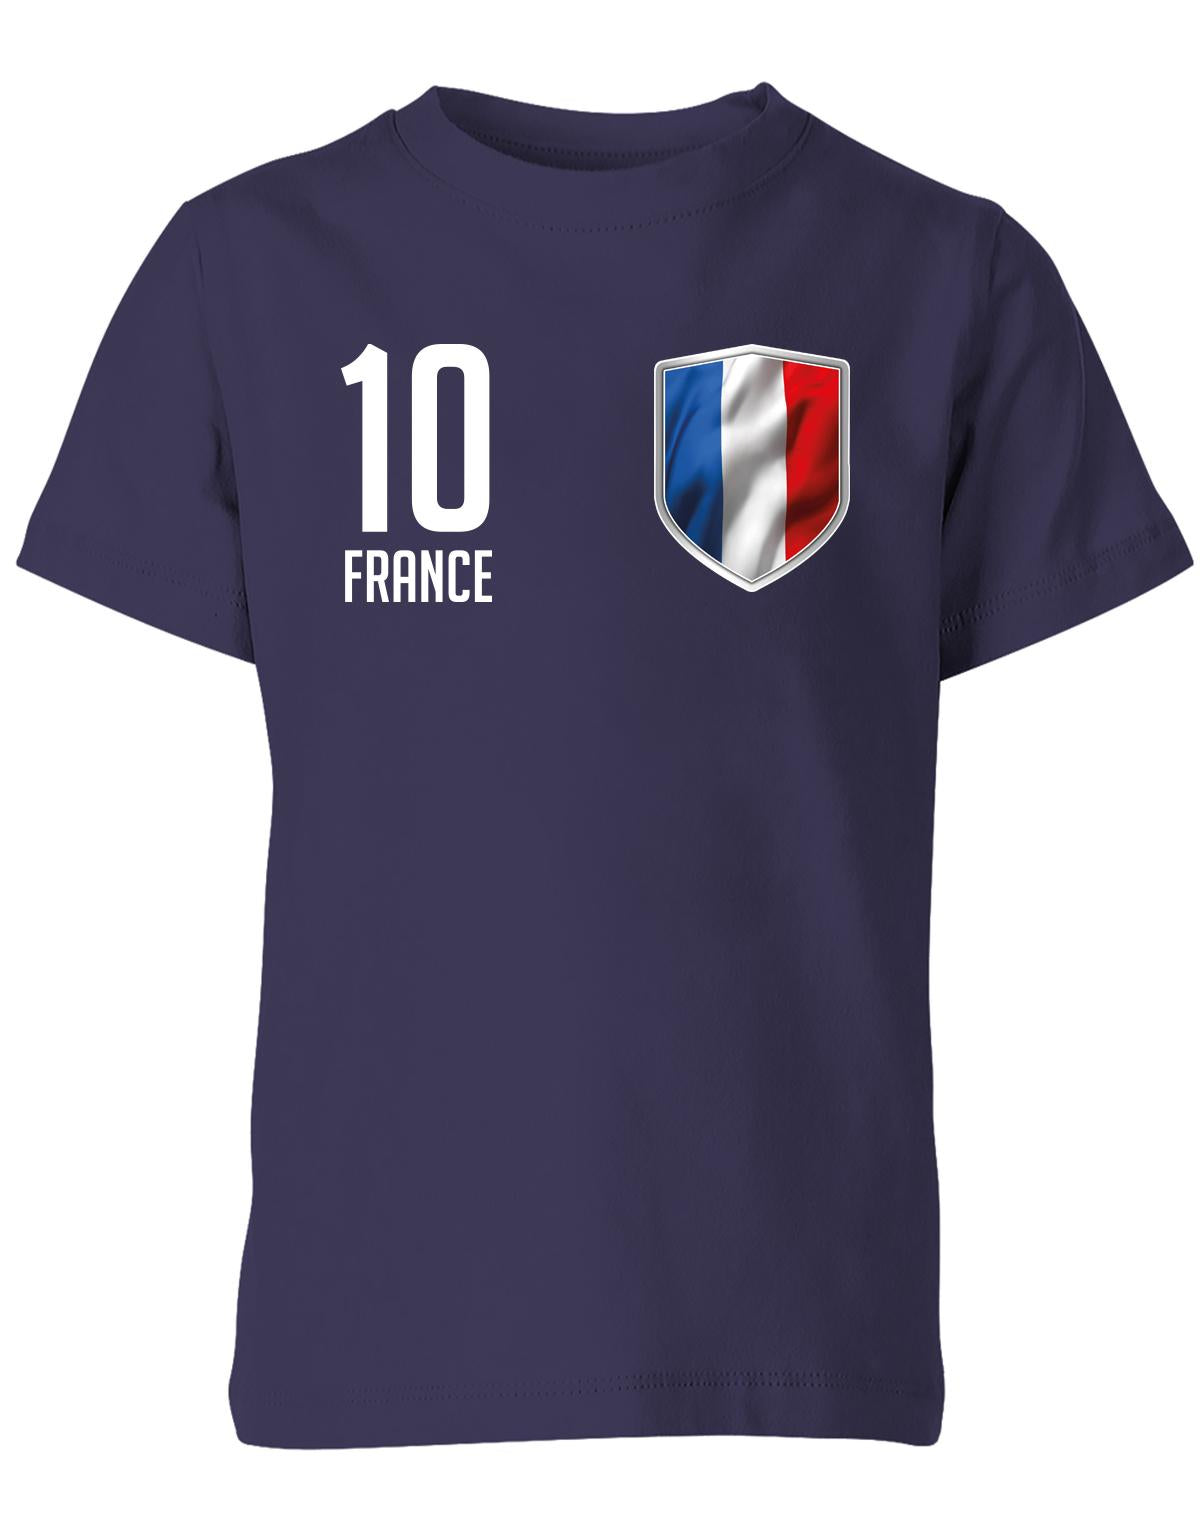 France-10-Kinder-Shirt-Navy